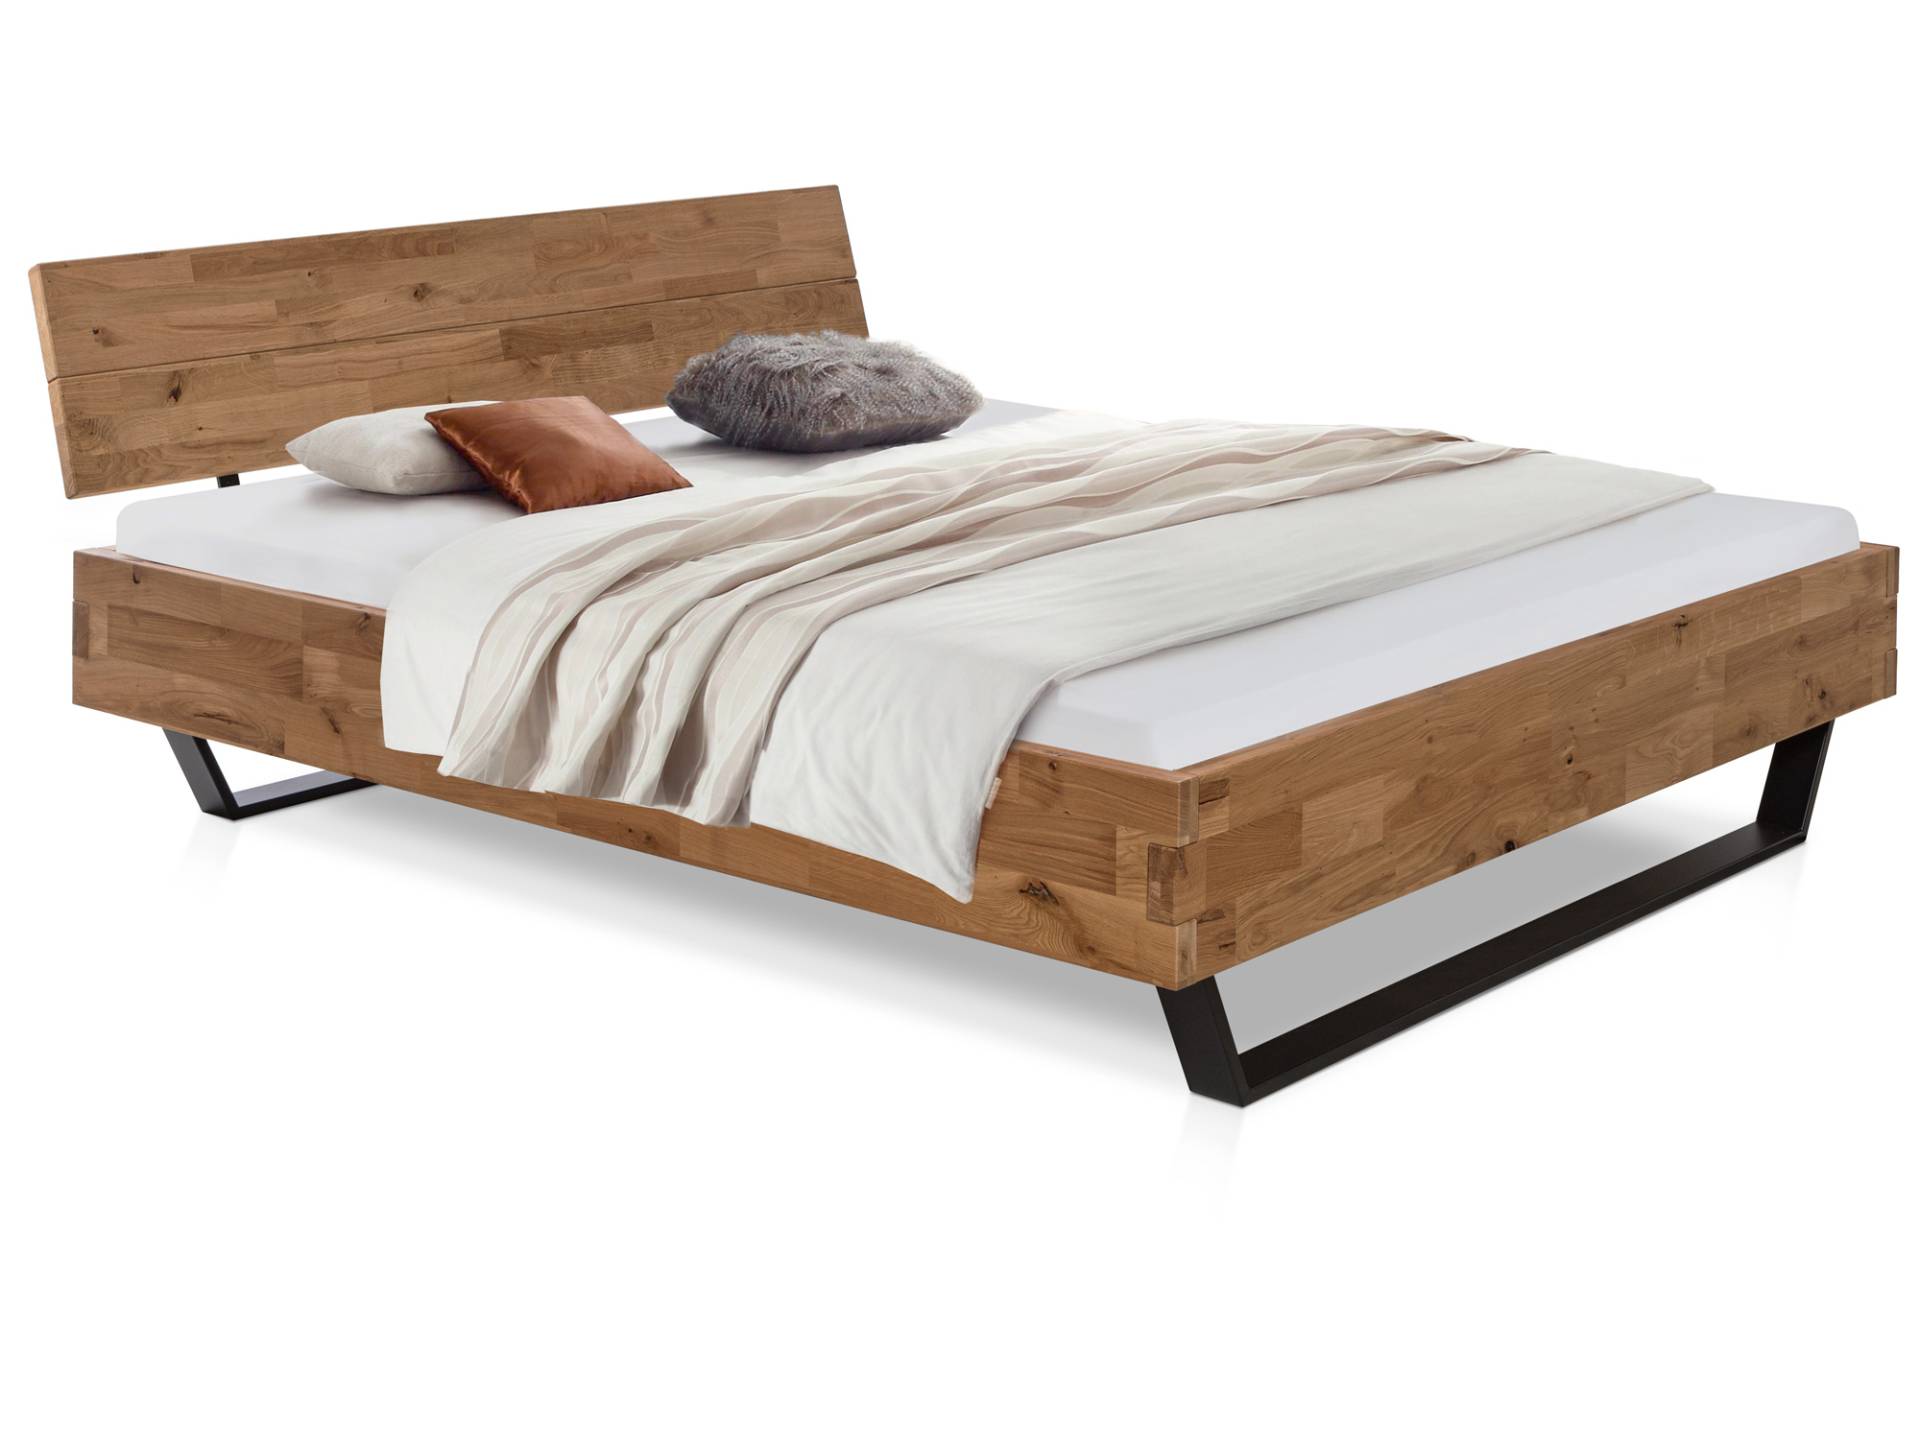 CORDINO Kufenbett aus Eiche, Material Massivholz, mit / ohne Kopfteil von Möbel-Eins